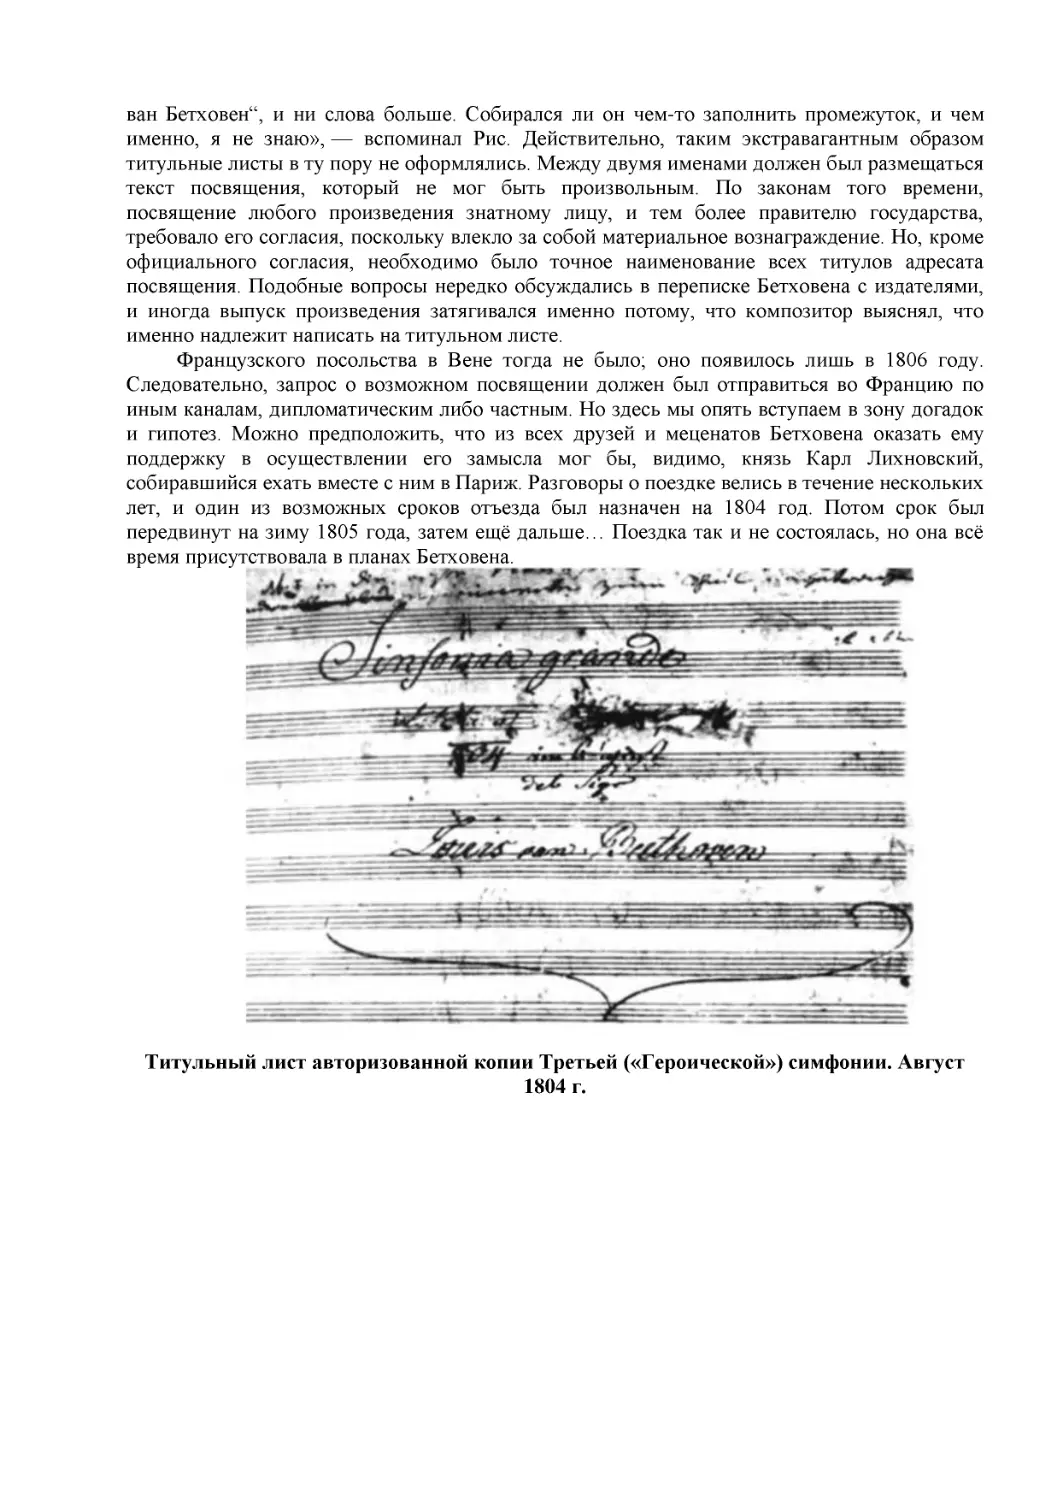 Титульный лист авторизованной копии Третьей («Героической») симфонии. Август 1804 г.